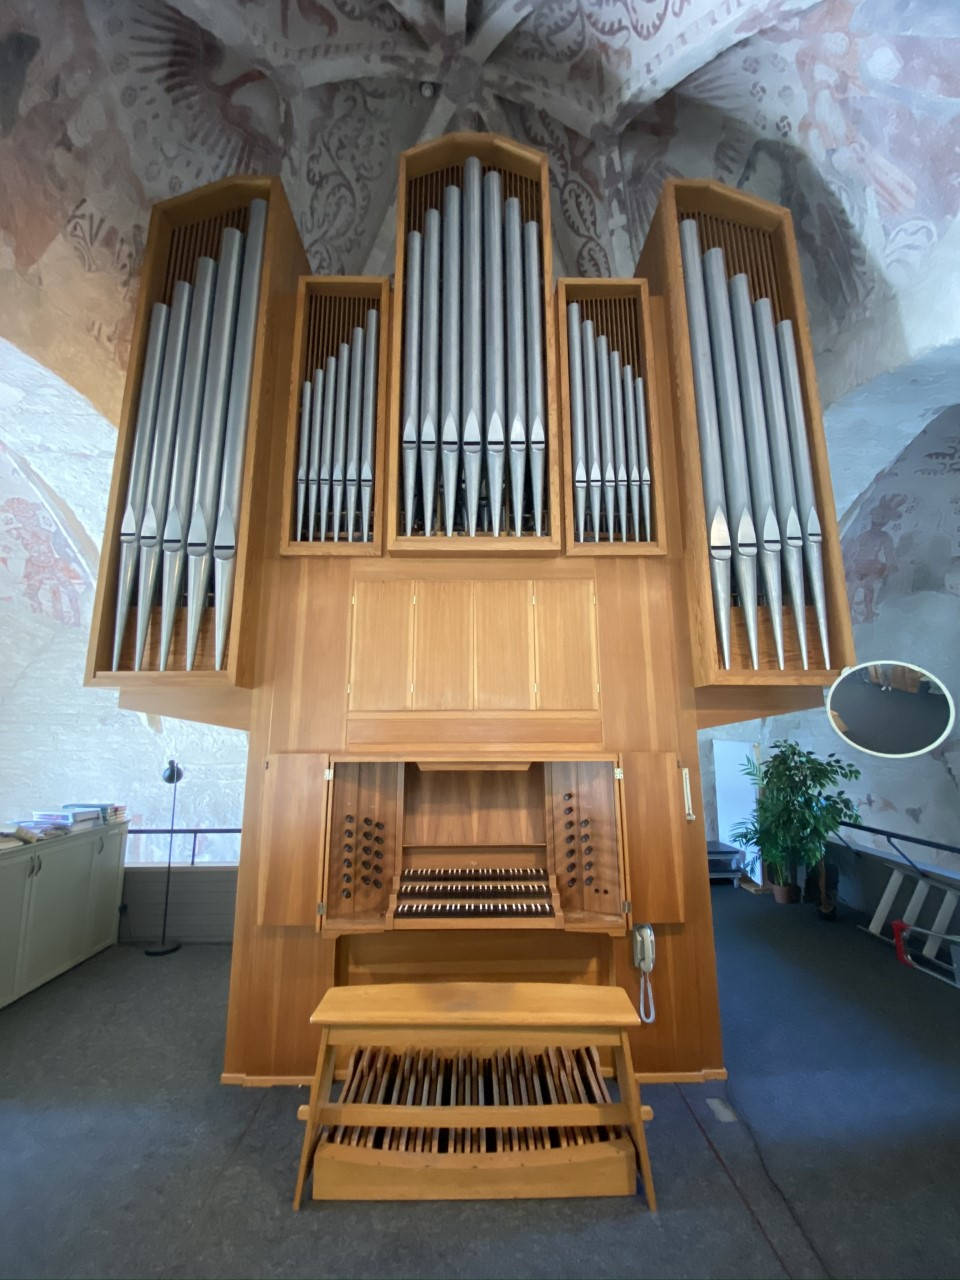 Den nuvarande orgeln